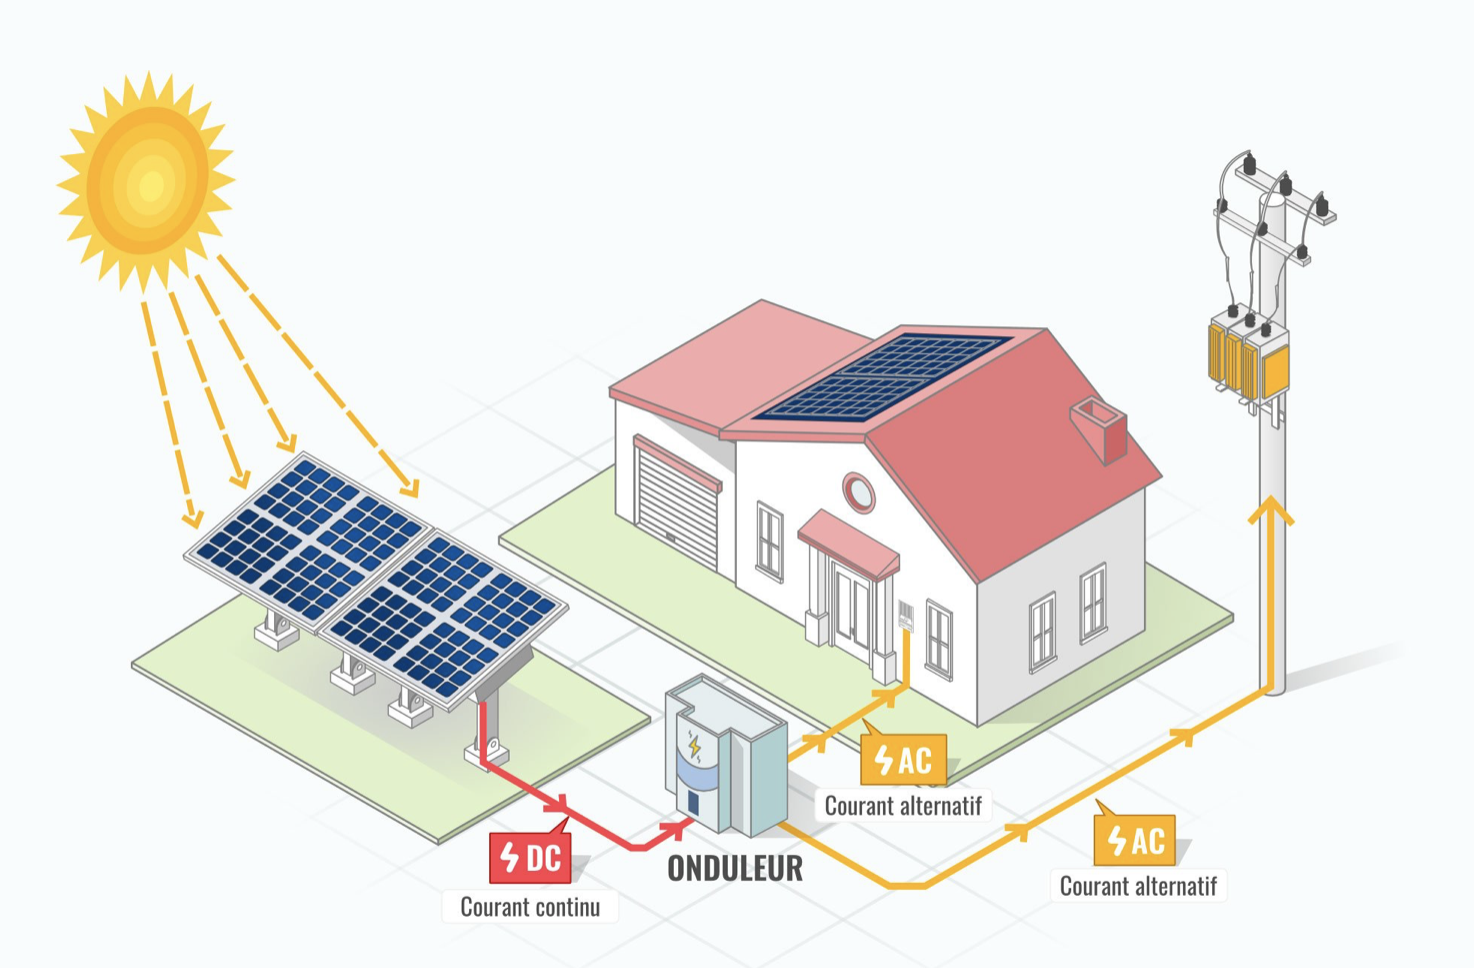 énergie solaire et photovoltaïque comment ça marche